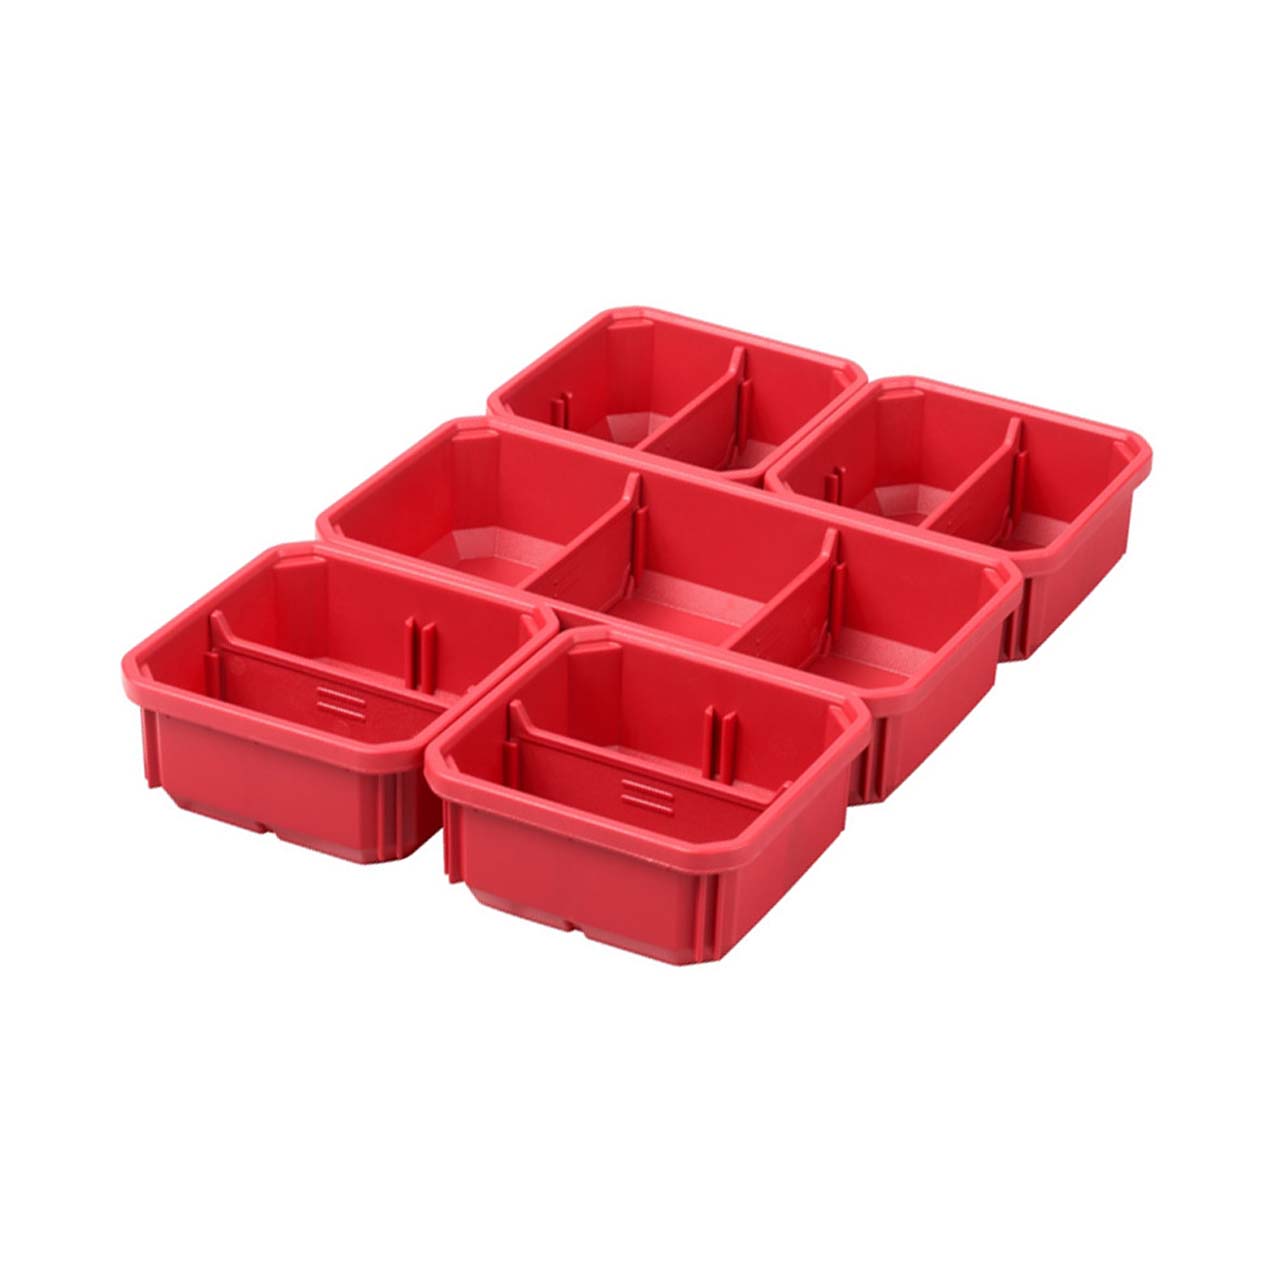 Milwaukee Packout Ersatzboxen 5 Stück für Packout Organiser Slim und Organiser Slim Compact - 1 Stk.